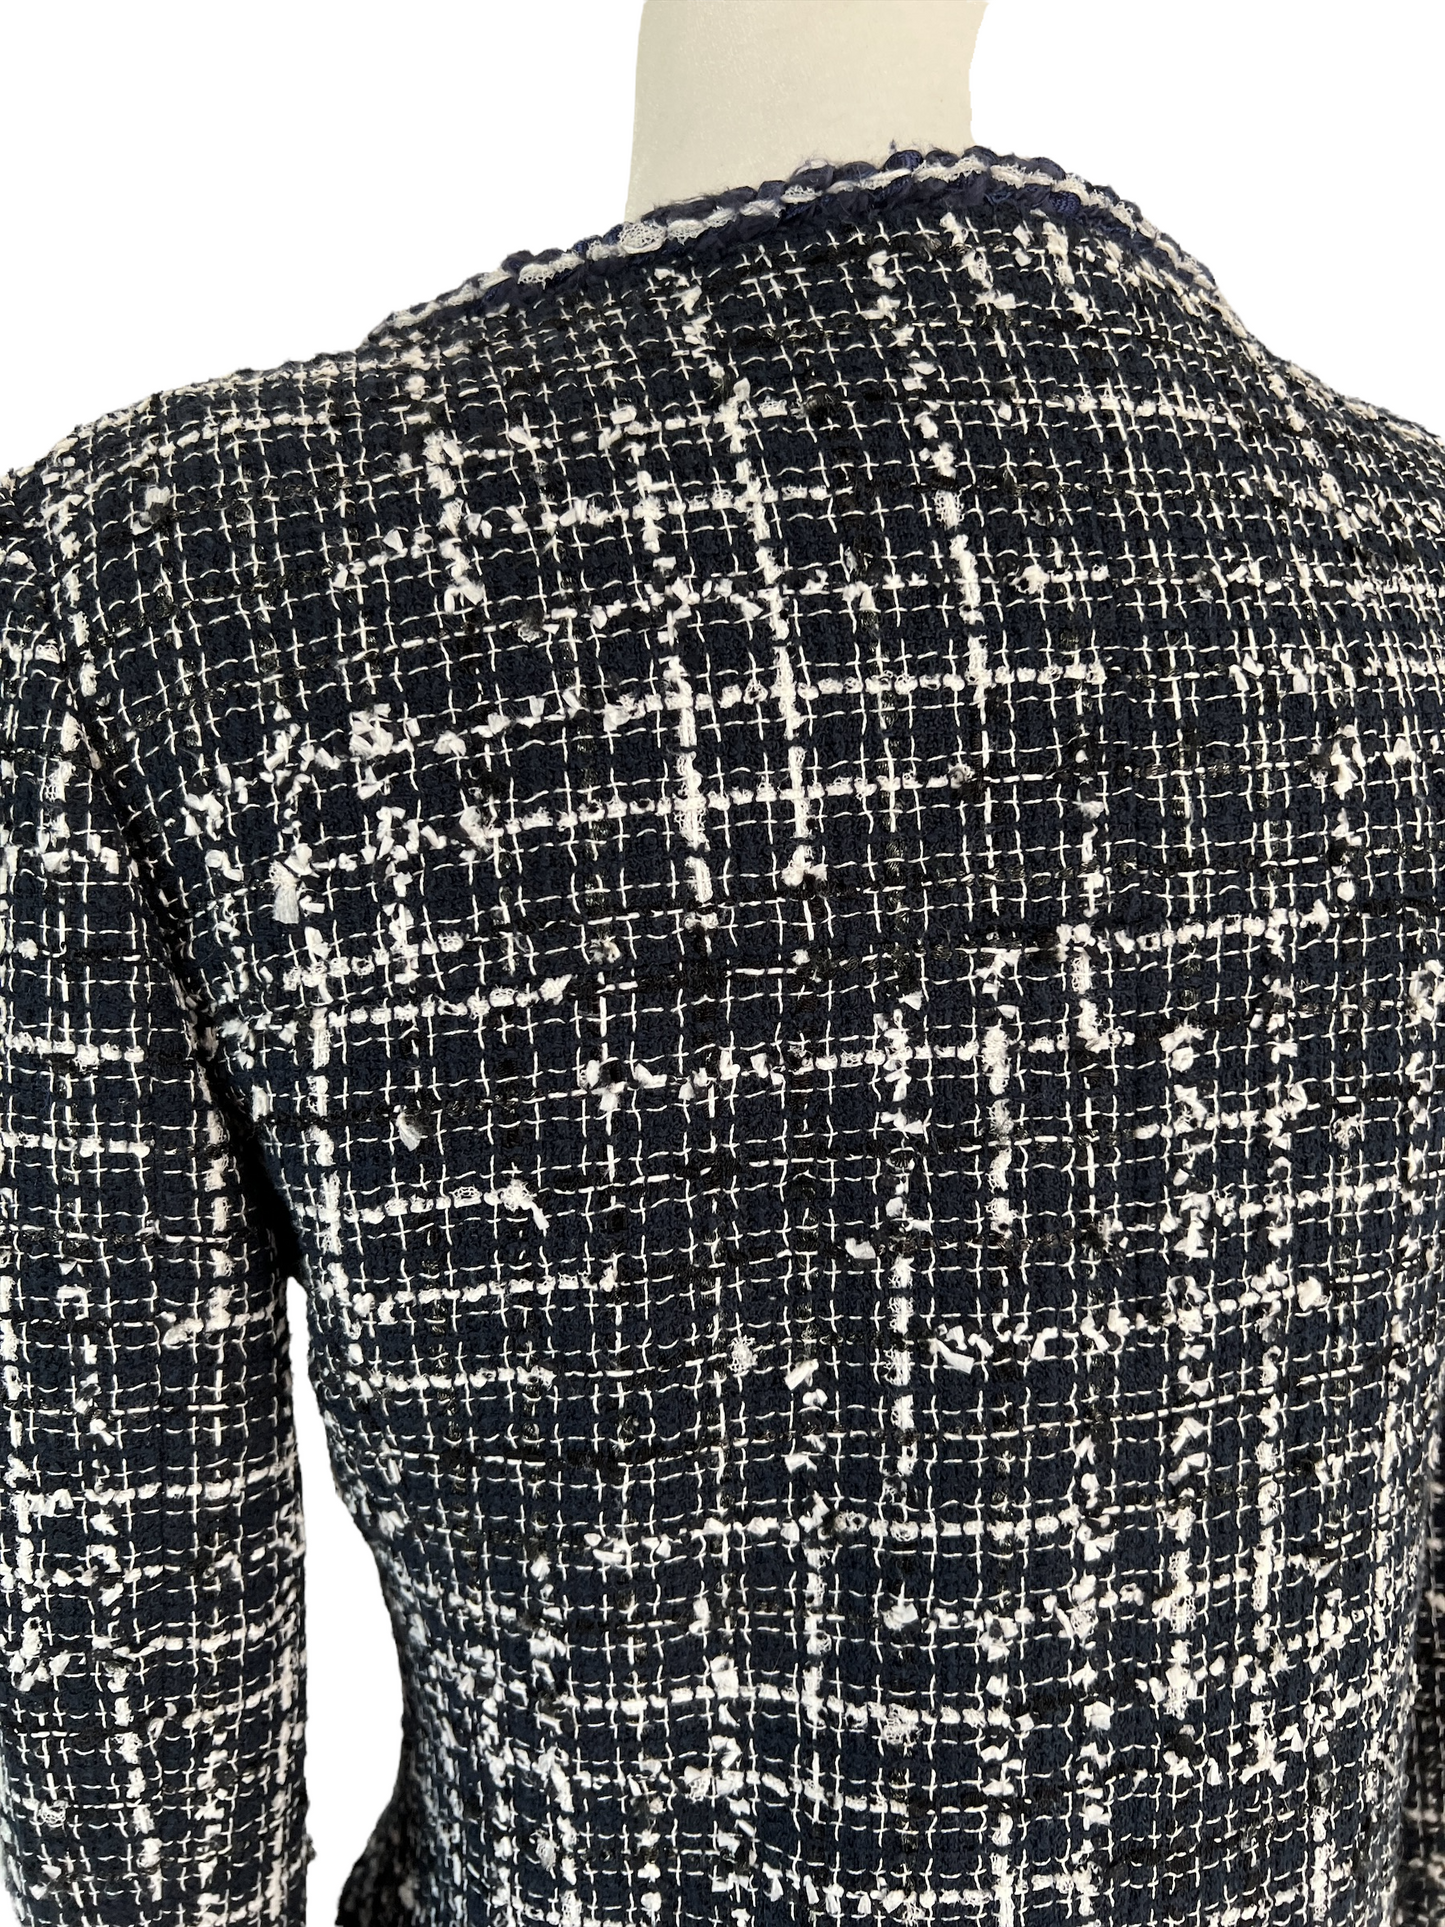 2014 Tweed Jacket - S